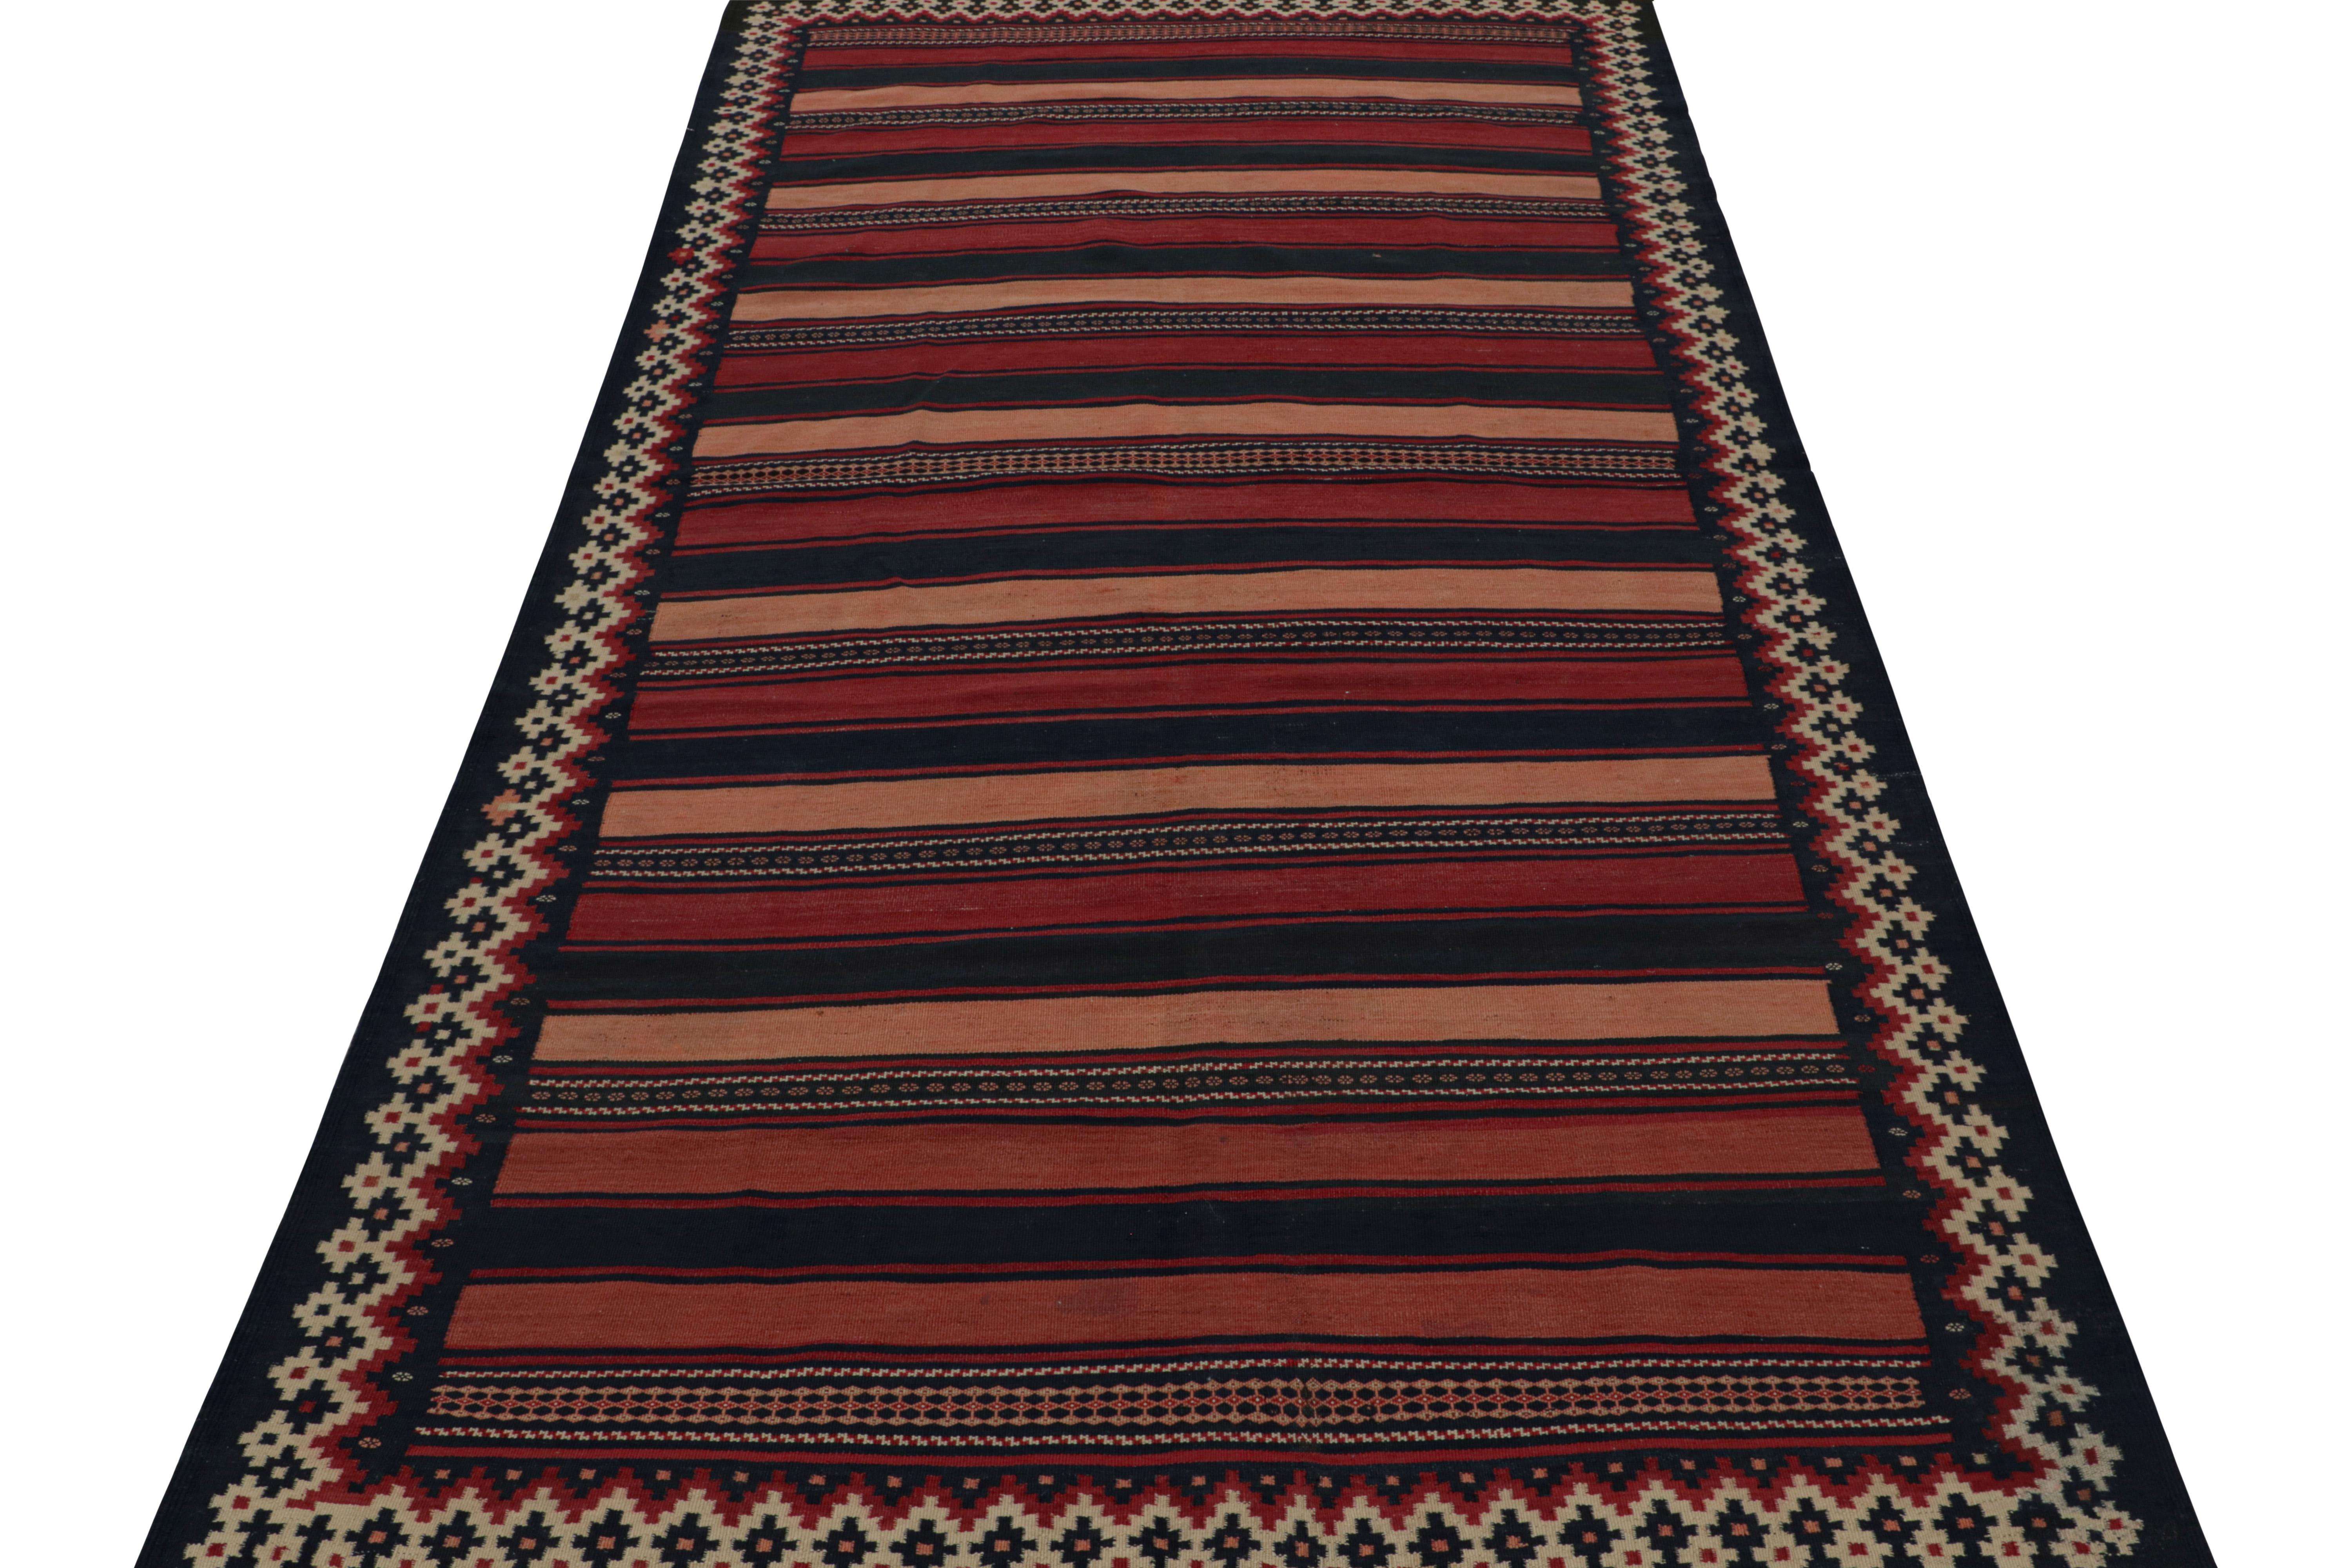 Tribal Vintage Afghani tribal Kilim runner rug, in Beige/brown, from Rug & Kilim For Sale